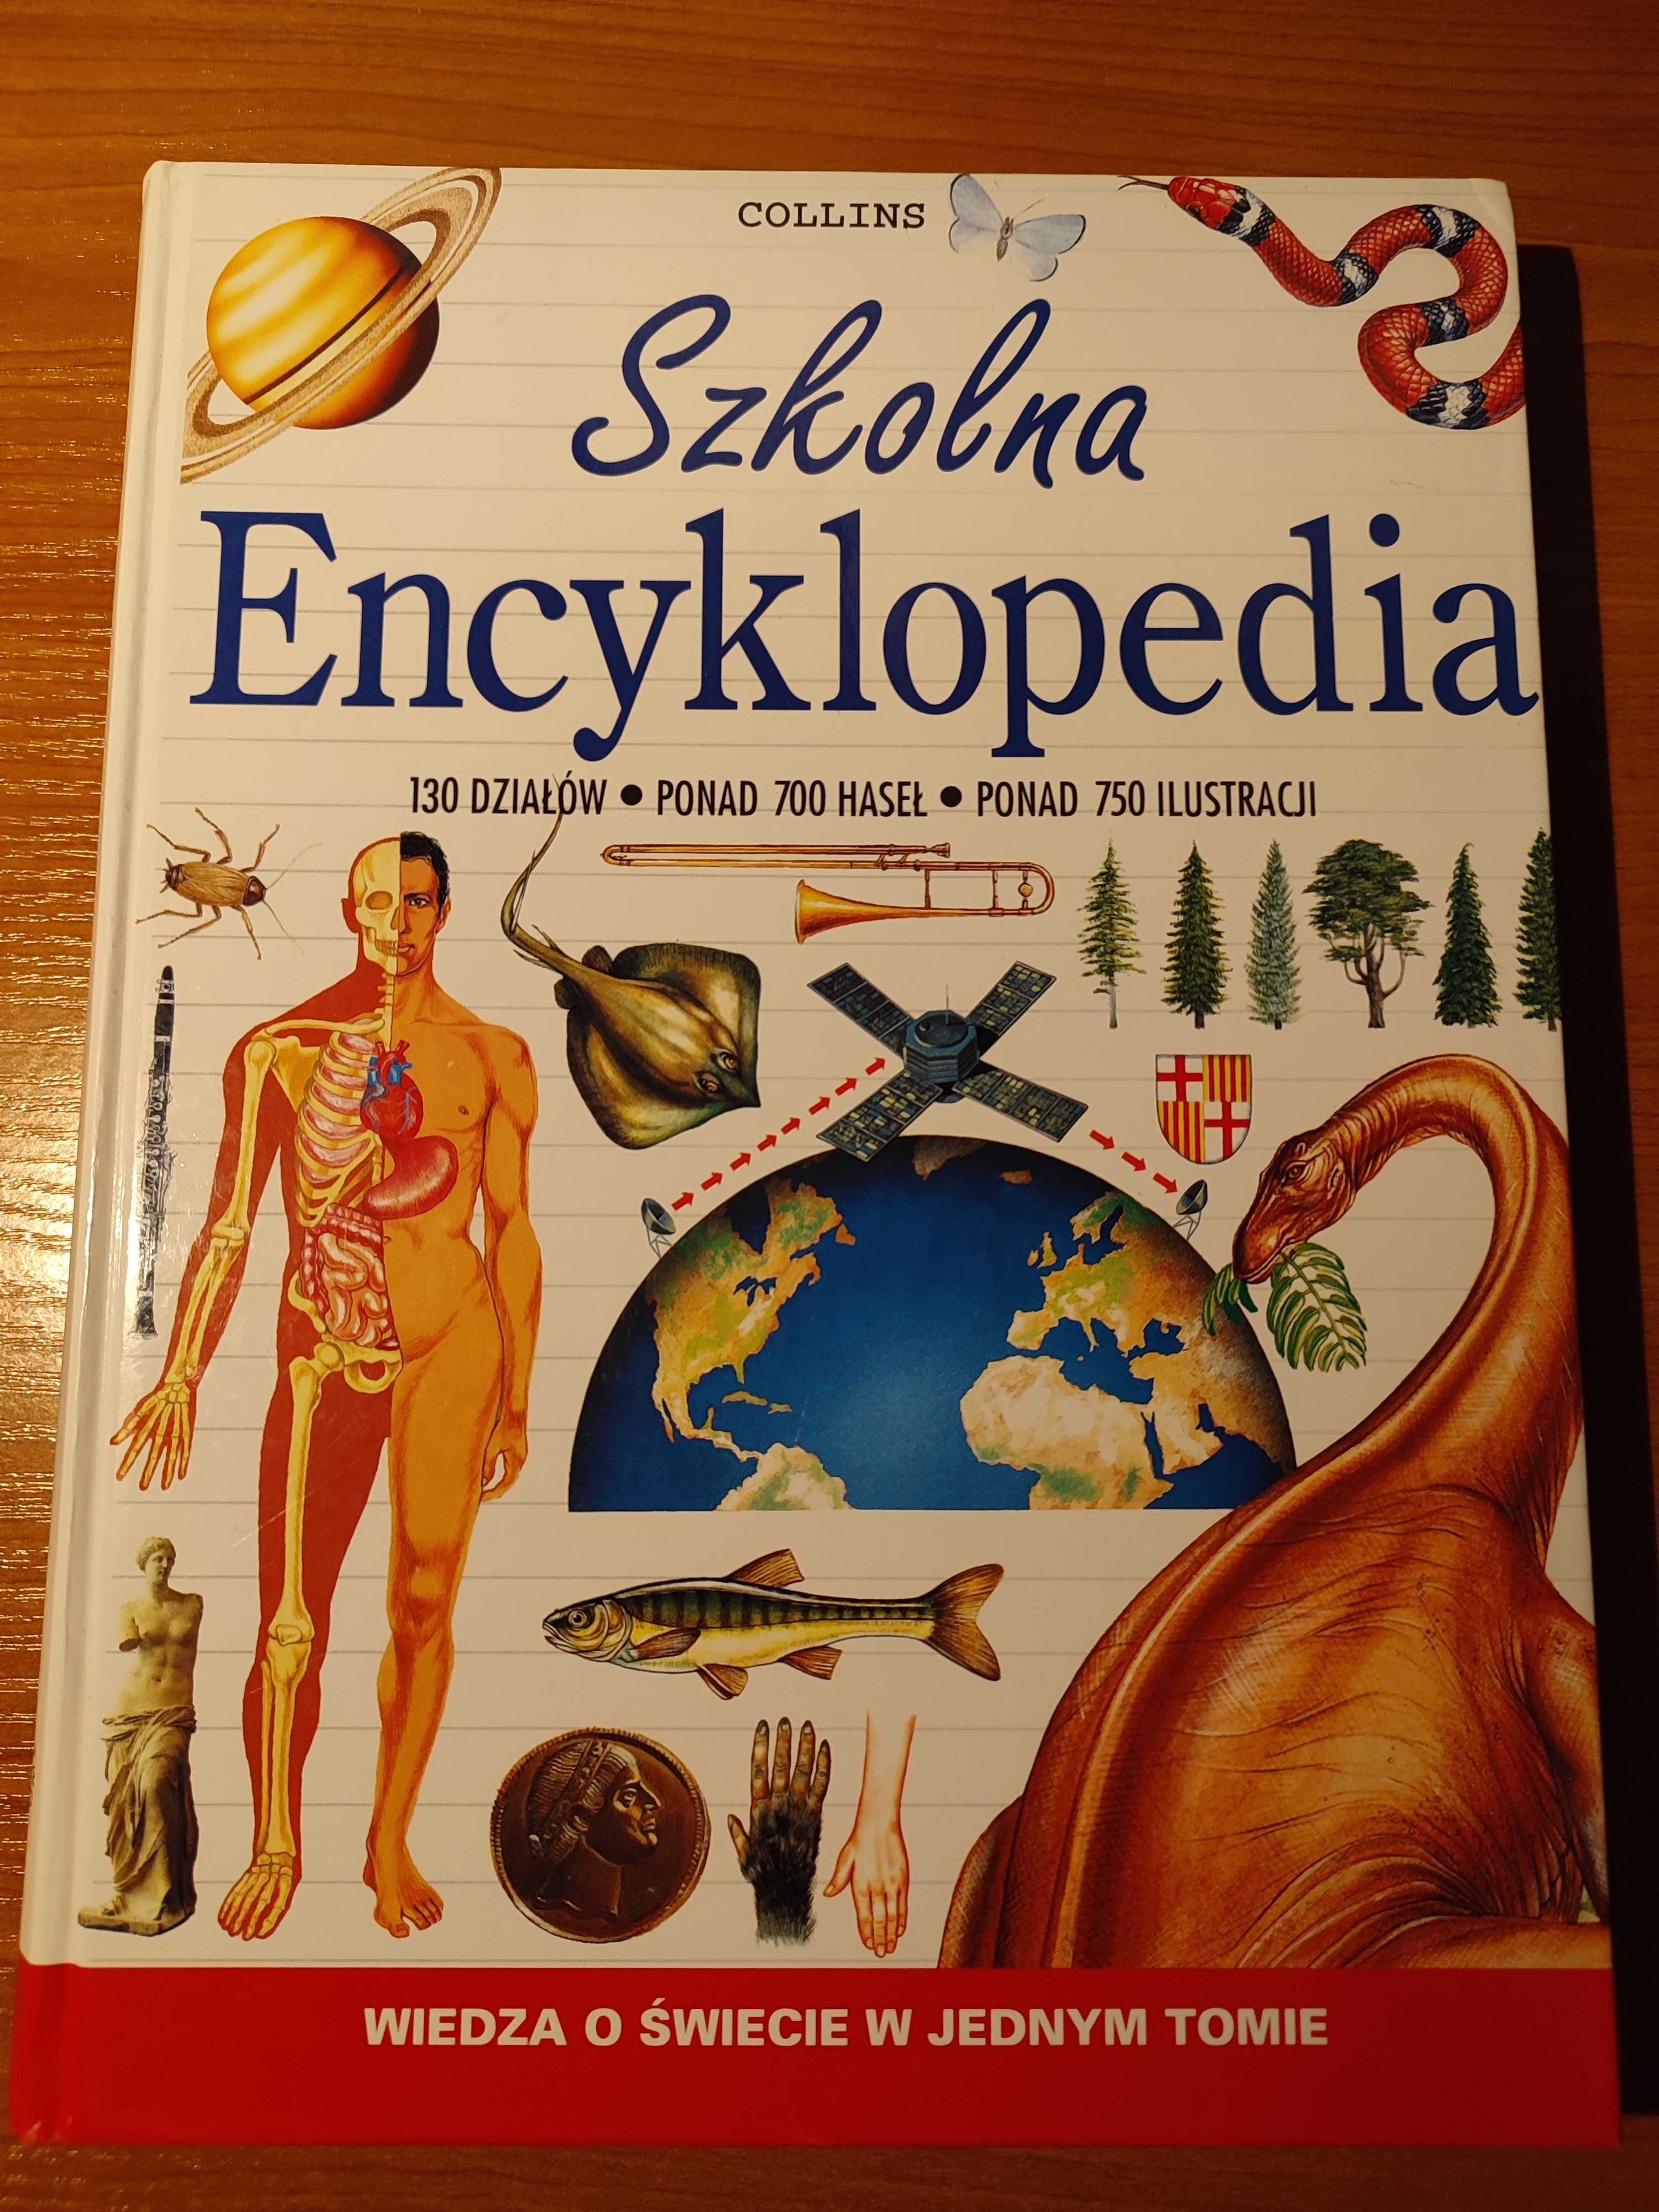 Szkolna Encyklopedia - Collins